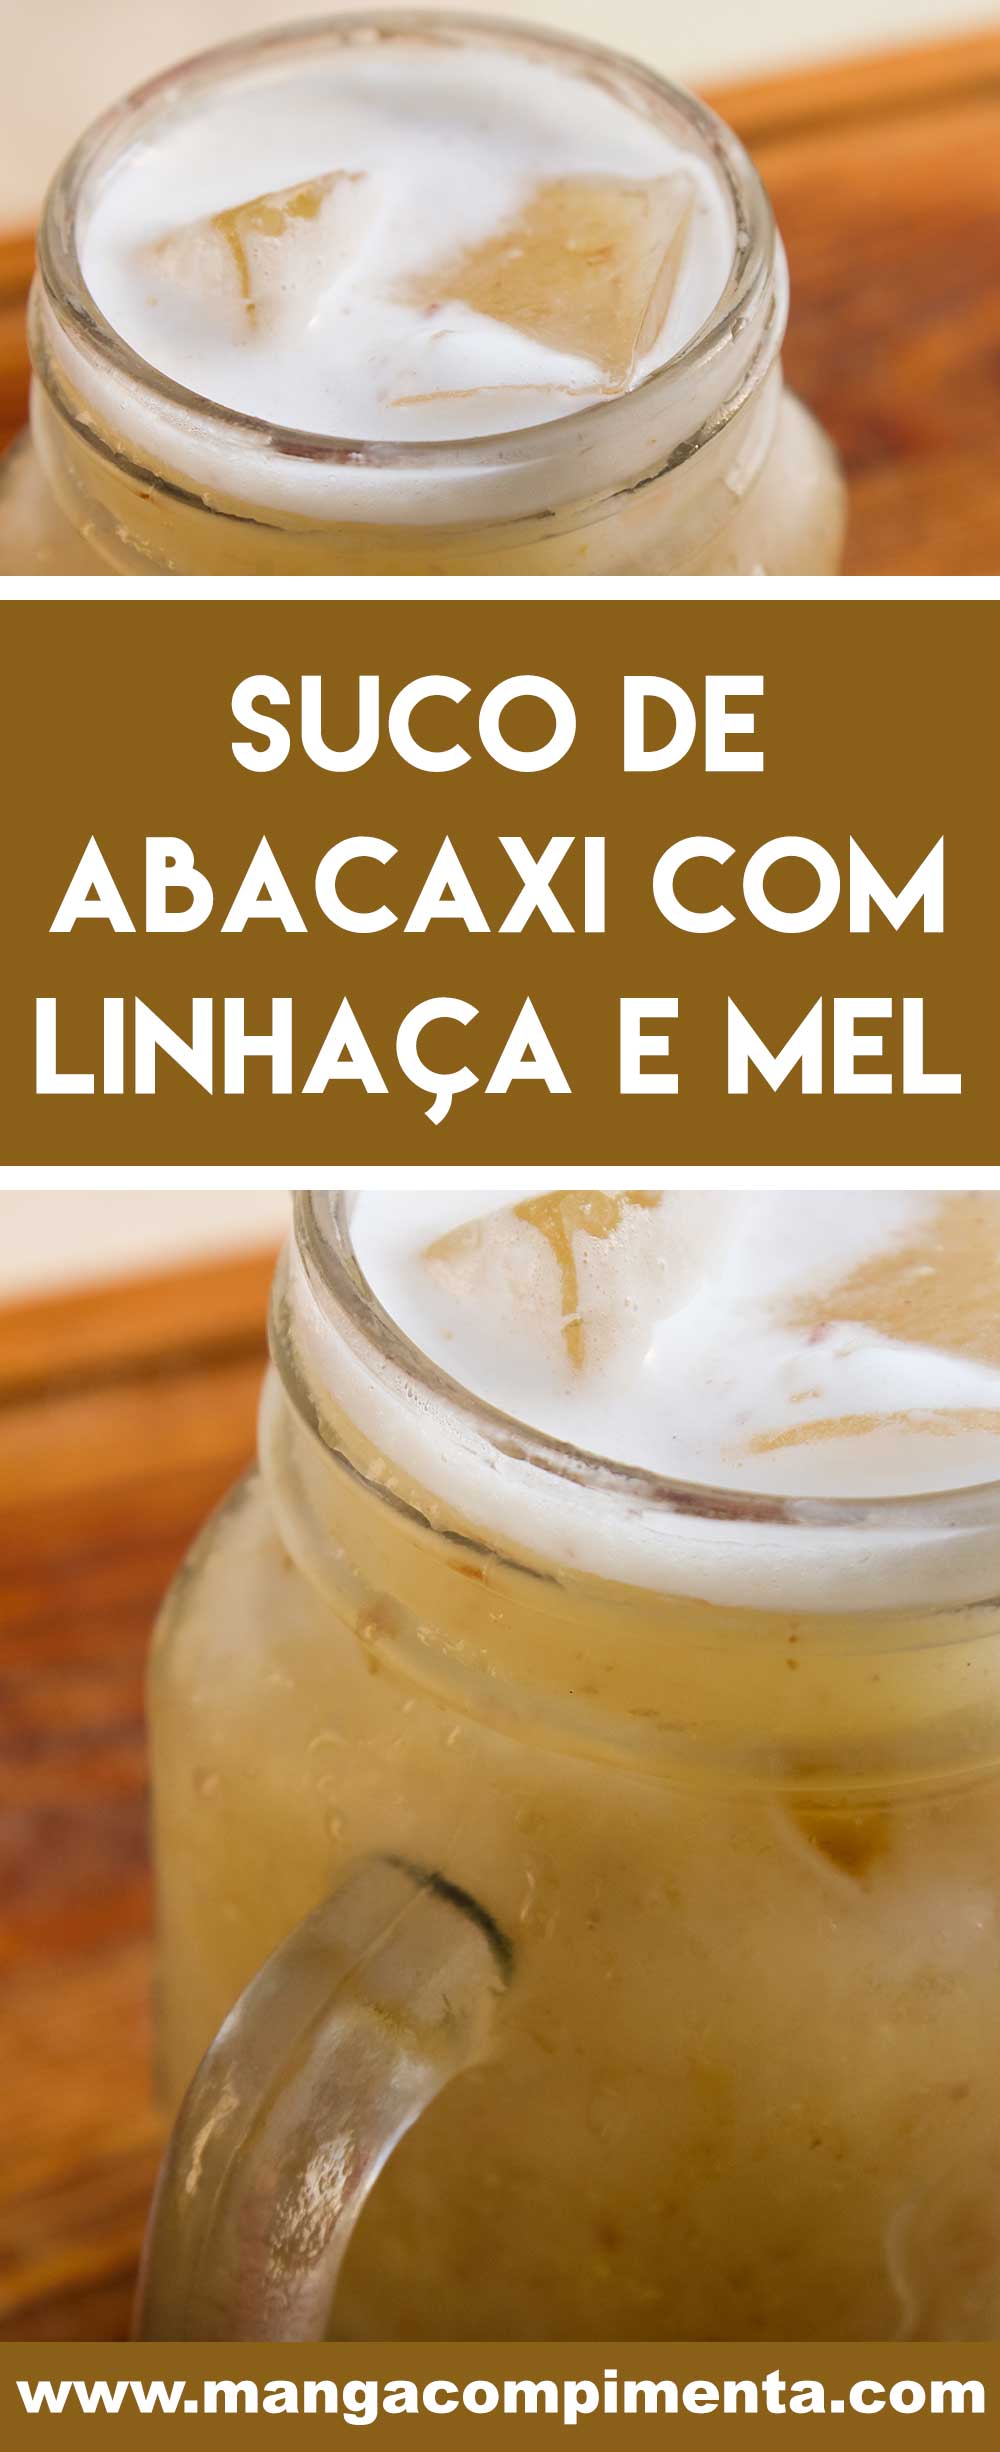 Receita de Suco de Abacaxi com Linhaça e Mel - prepare um delicioso suco para começar bem o dia e manter a saúde!